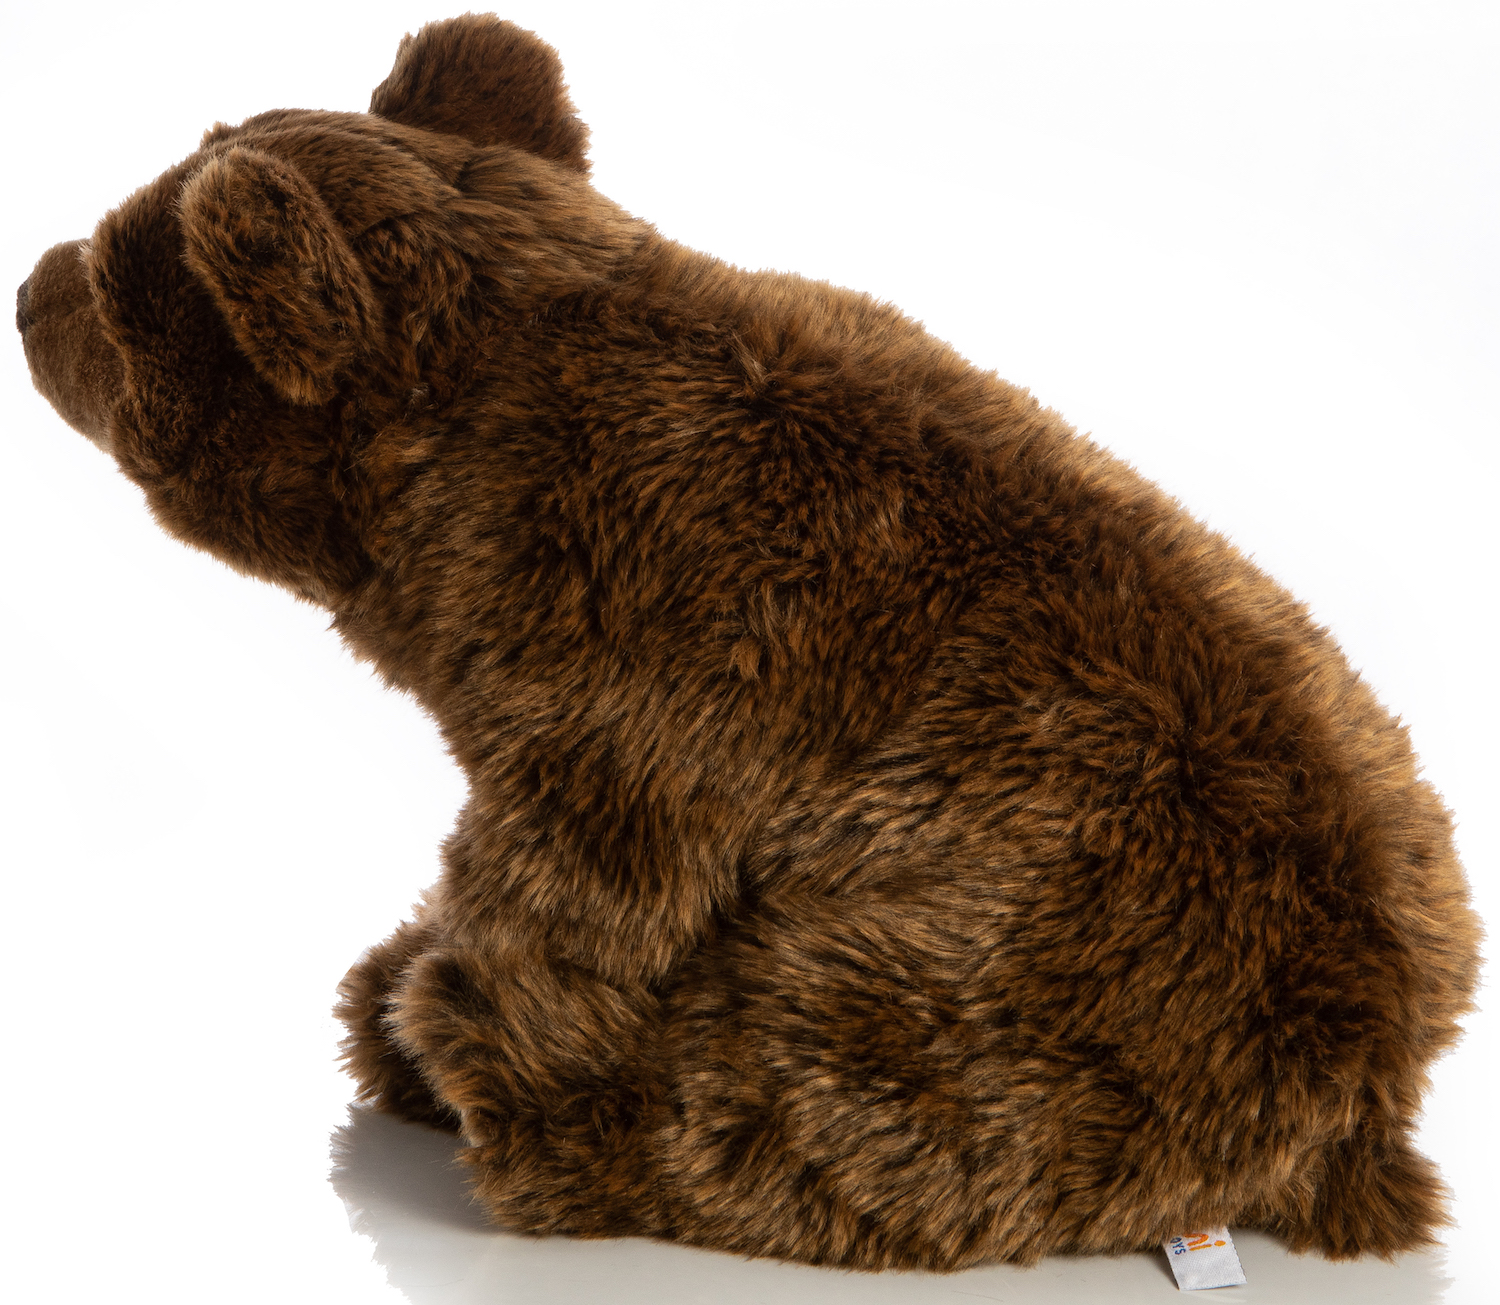 Brown bear large, sitting 43cm